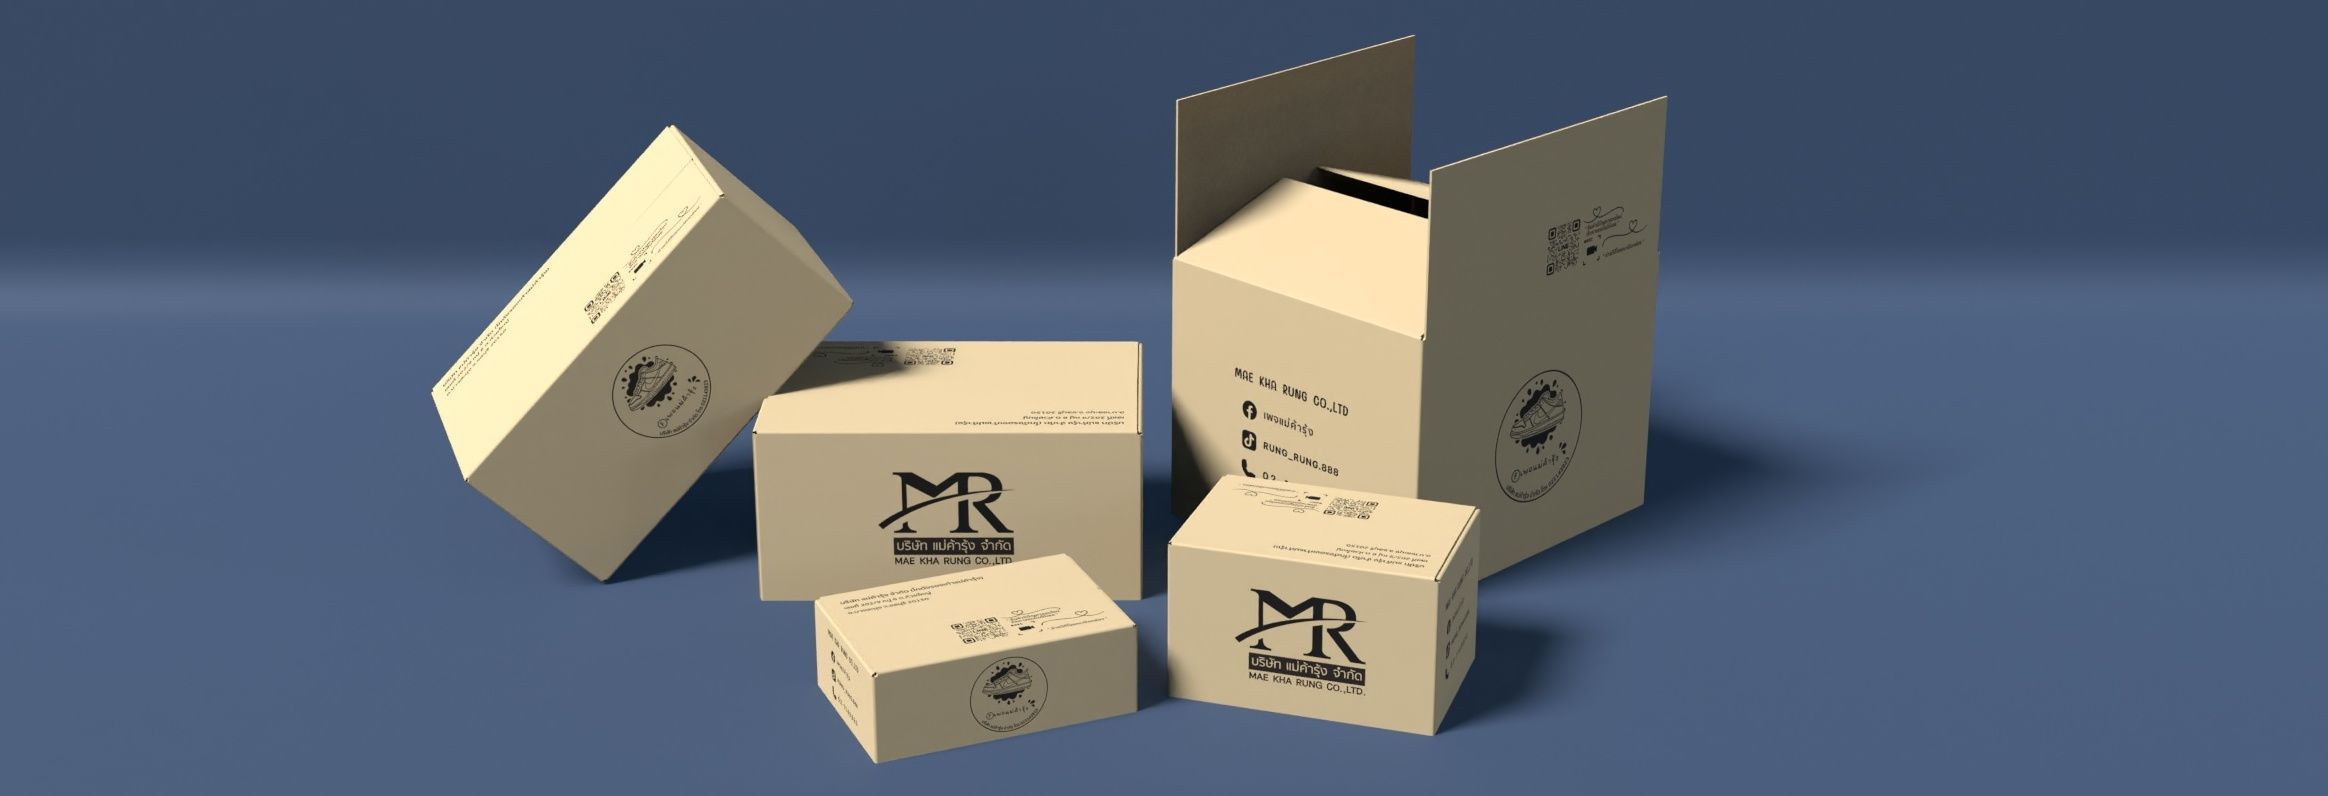 กล่องไปรษณีย์เพจแม่ค้ารุ้ง | KASBOX - โรงงานผลิตกล่องกระดาษลูกฟูก 